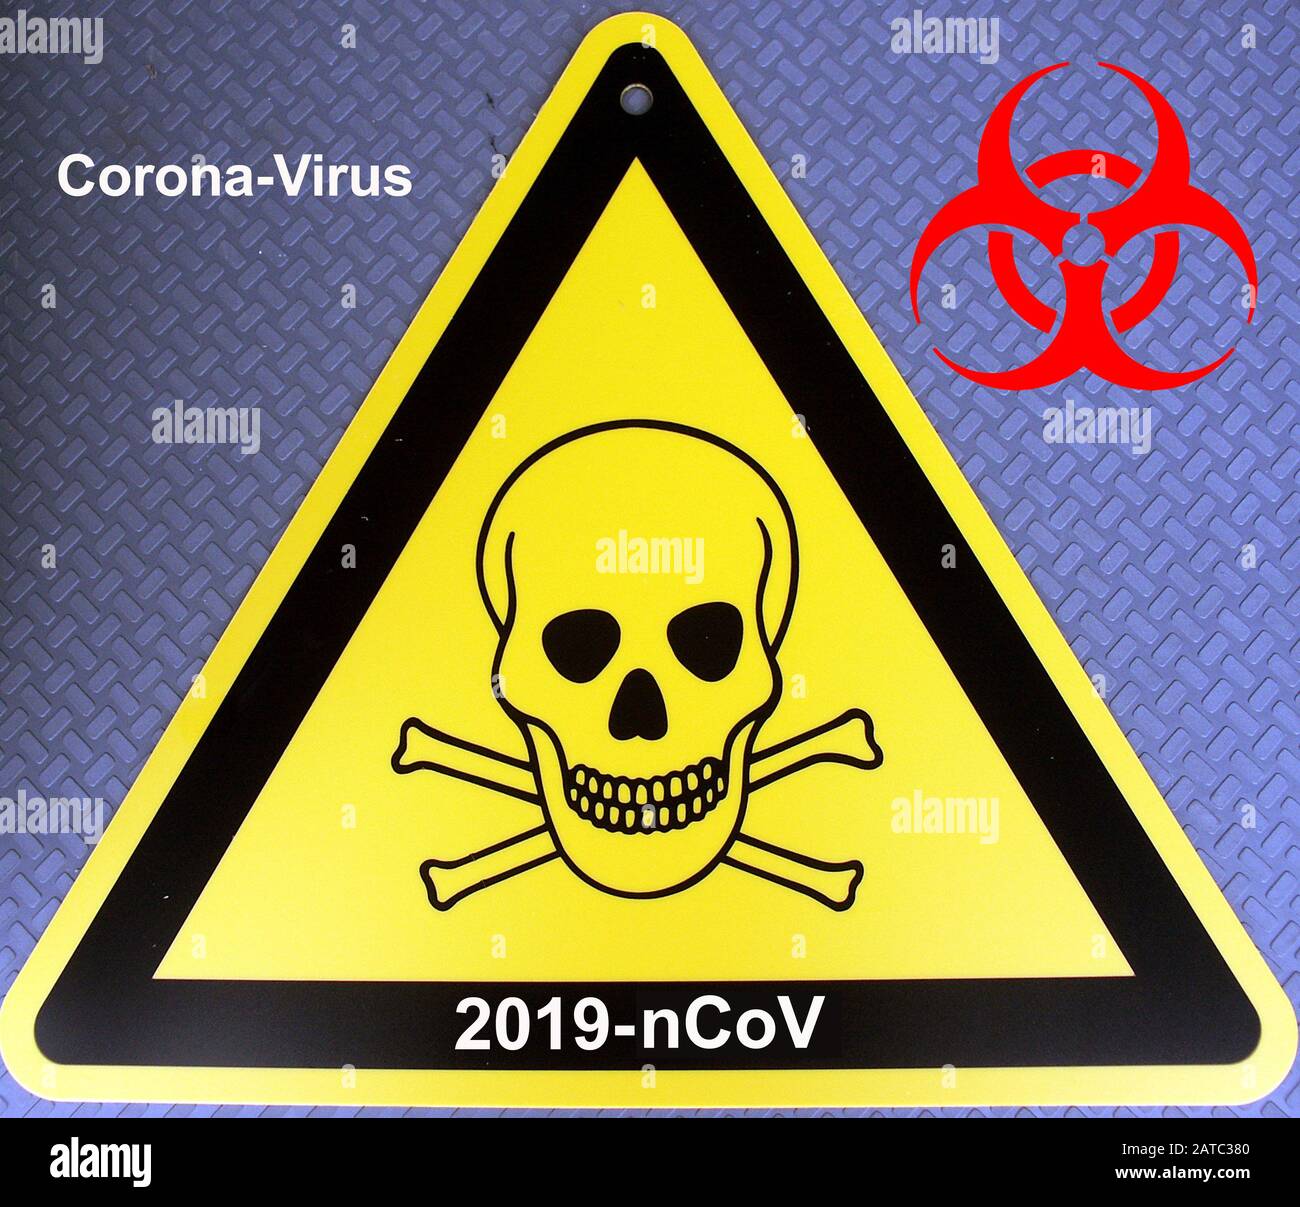 Gefahrenzeichen mit Totenkopfsymbol, Gift, Giftig, Giftige Flüssigkeit, Coronavirus, Corona-Virus, 2019-nCoV, Stock Photo